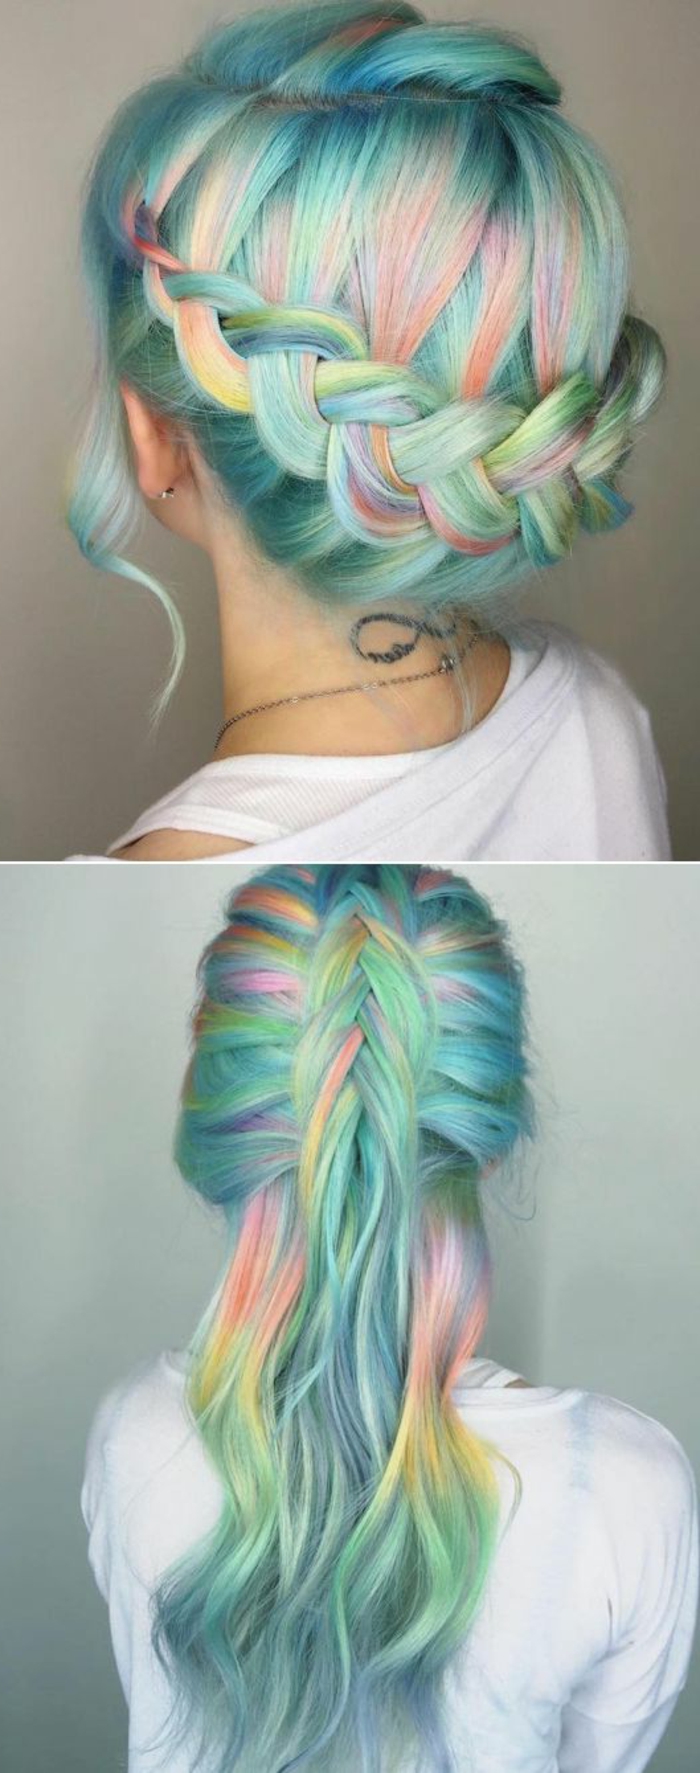 cheveux couleur arc en ciel, deux idées de tresse, couronne de tresse et demi-tresse lachée, idée de coiffure femme extravagante colorée